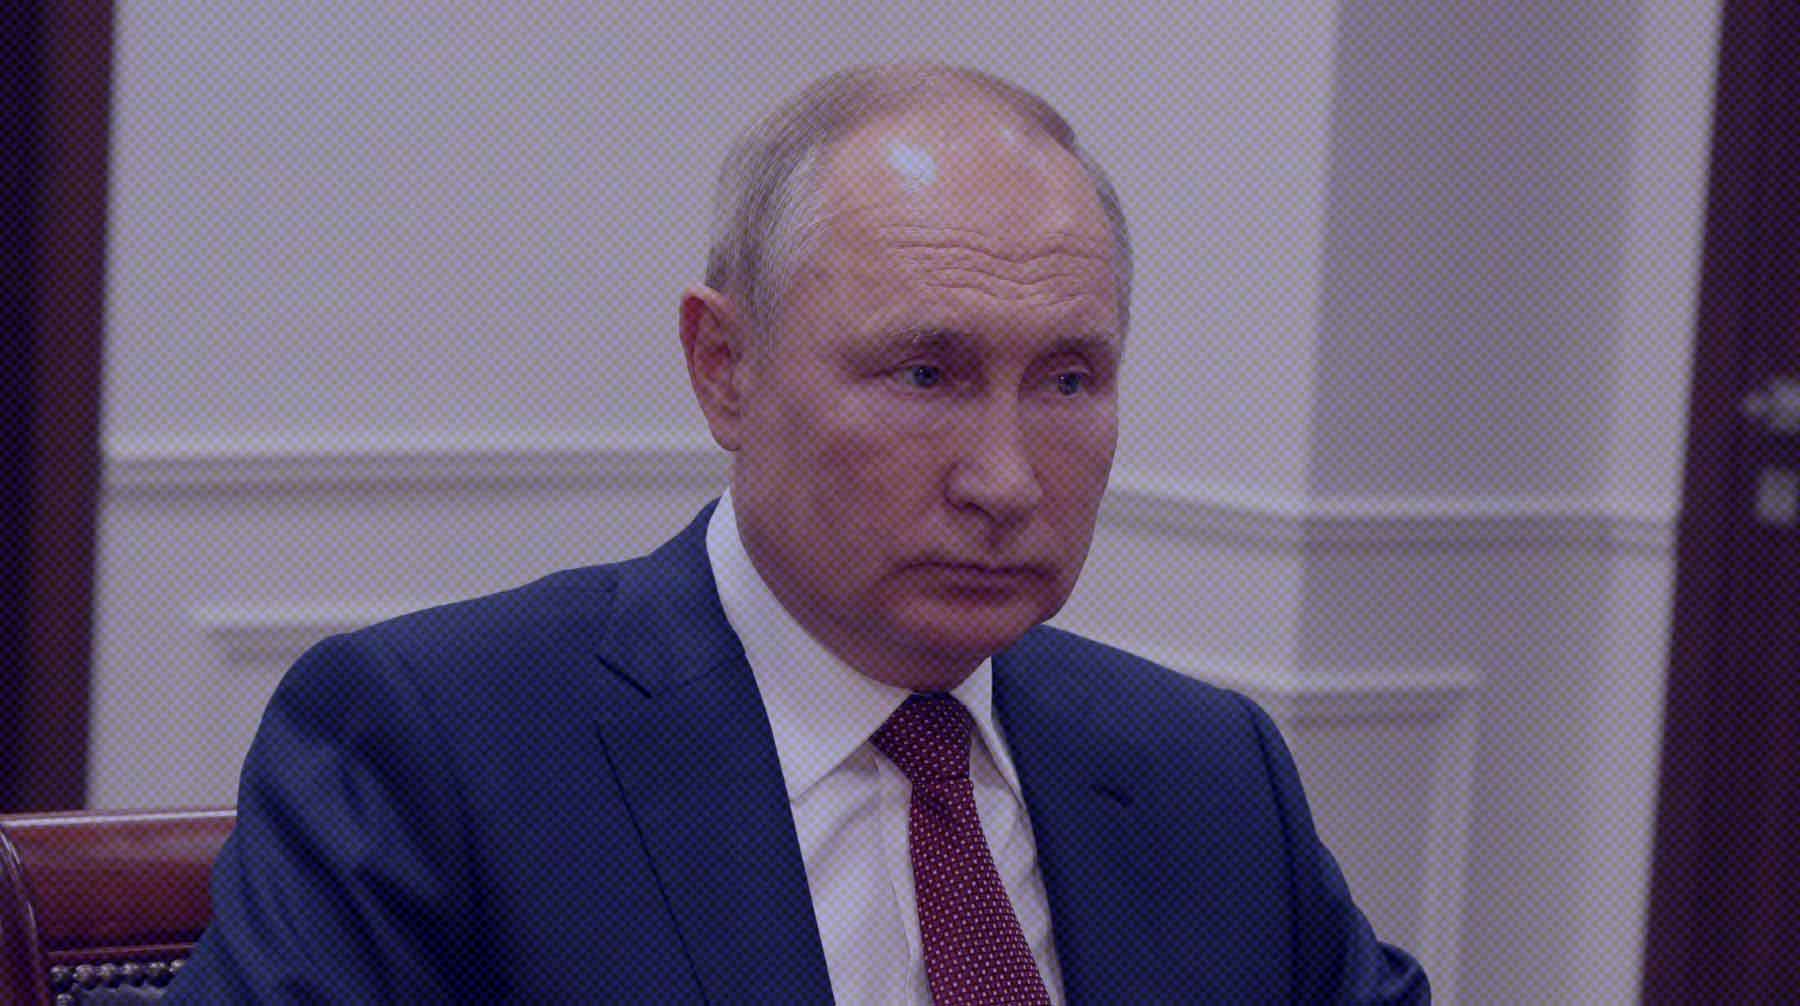 Соглашение должно гарантировать безопасность России, подчеркнул президент Фото: Global Look Press / Kremlin Pool